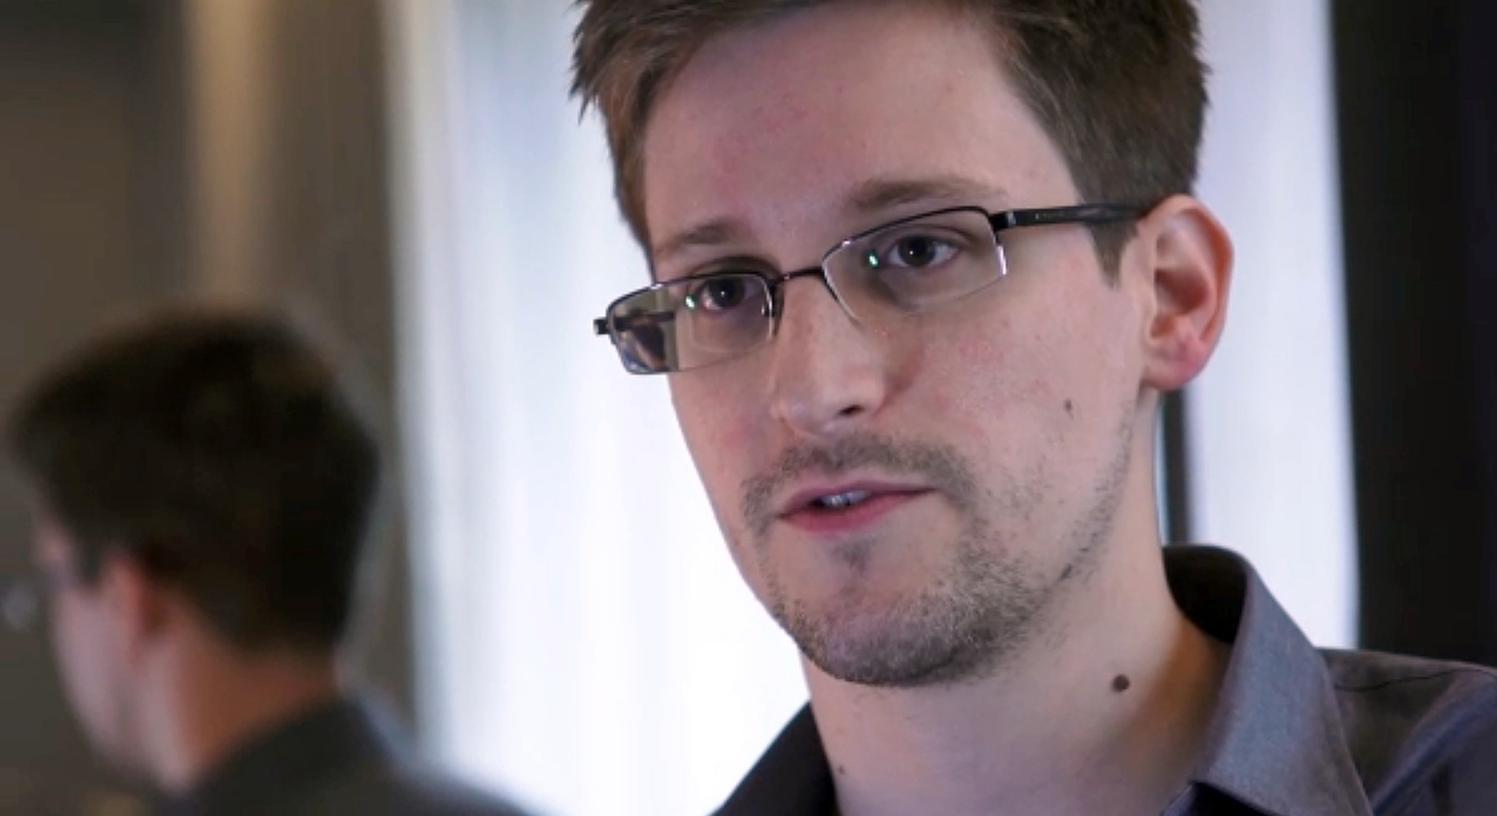 Edward Snowden enthüllte die Spionage- und Überwachungspraktiken von Geheimdiensten.